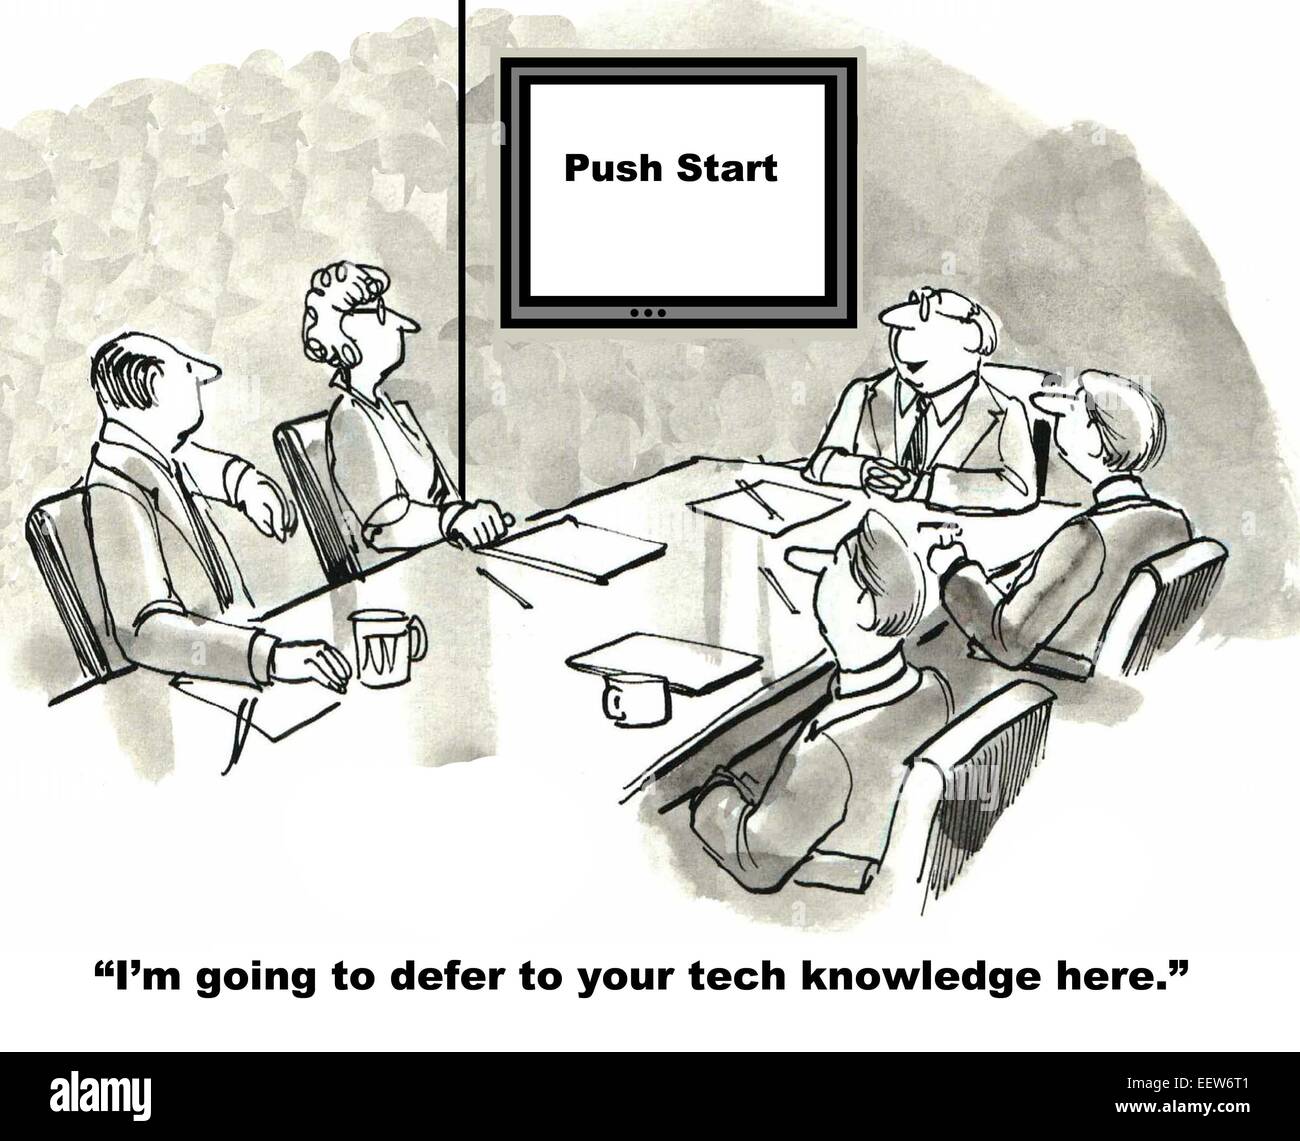 Cartoon di imprenditore dicendo al team da lui sarà deferita alla loro conoscenza tecnica, segno dice ;premere start'. Foto Stock